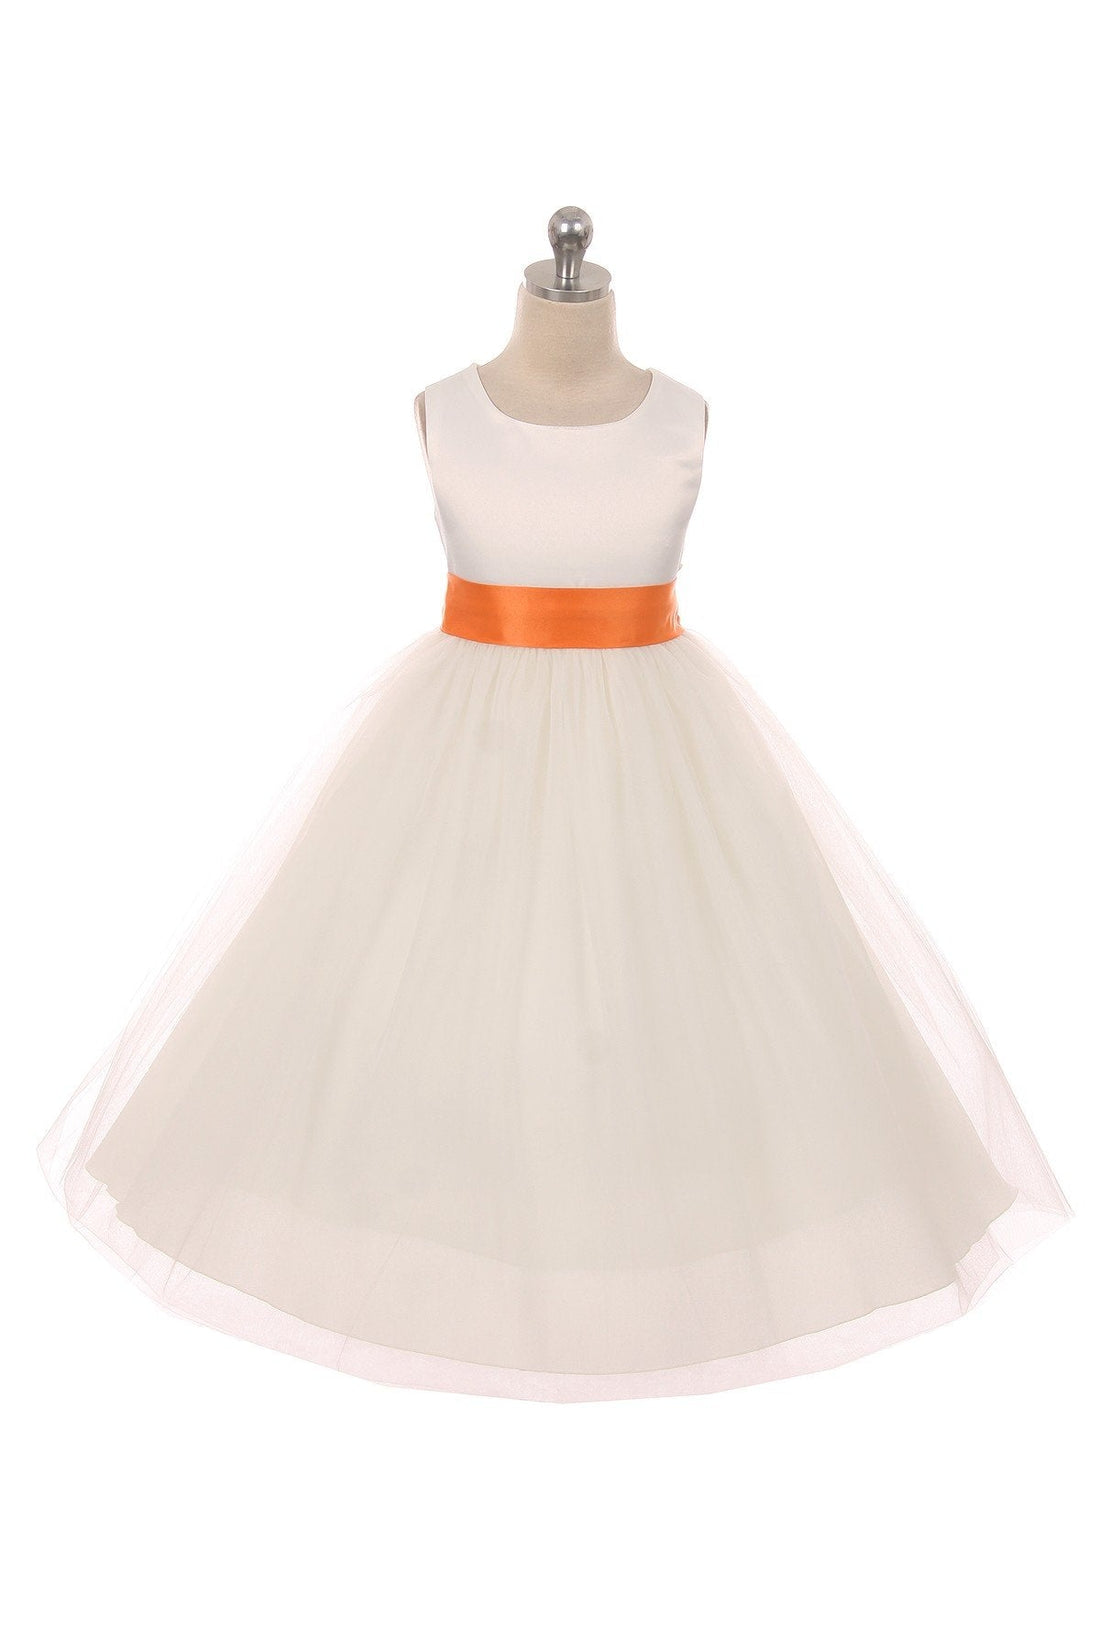 Orange Girl Dress - Ivory Satin Sash Bow Girl Dress - AS411 Kids Dream